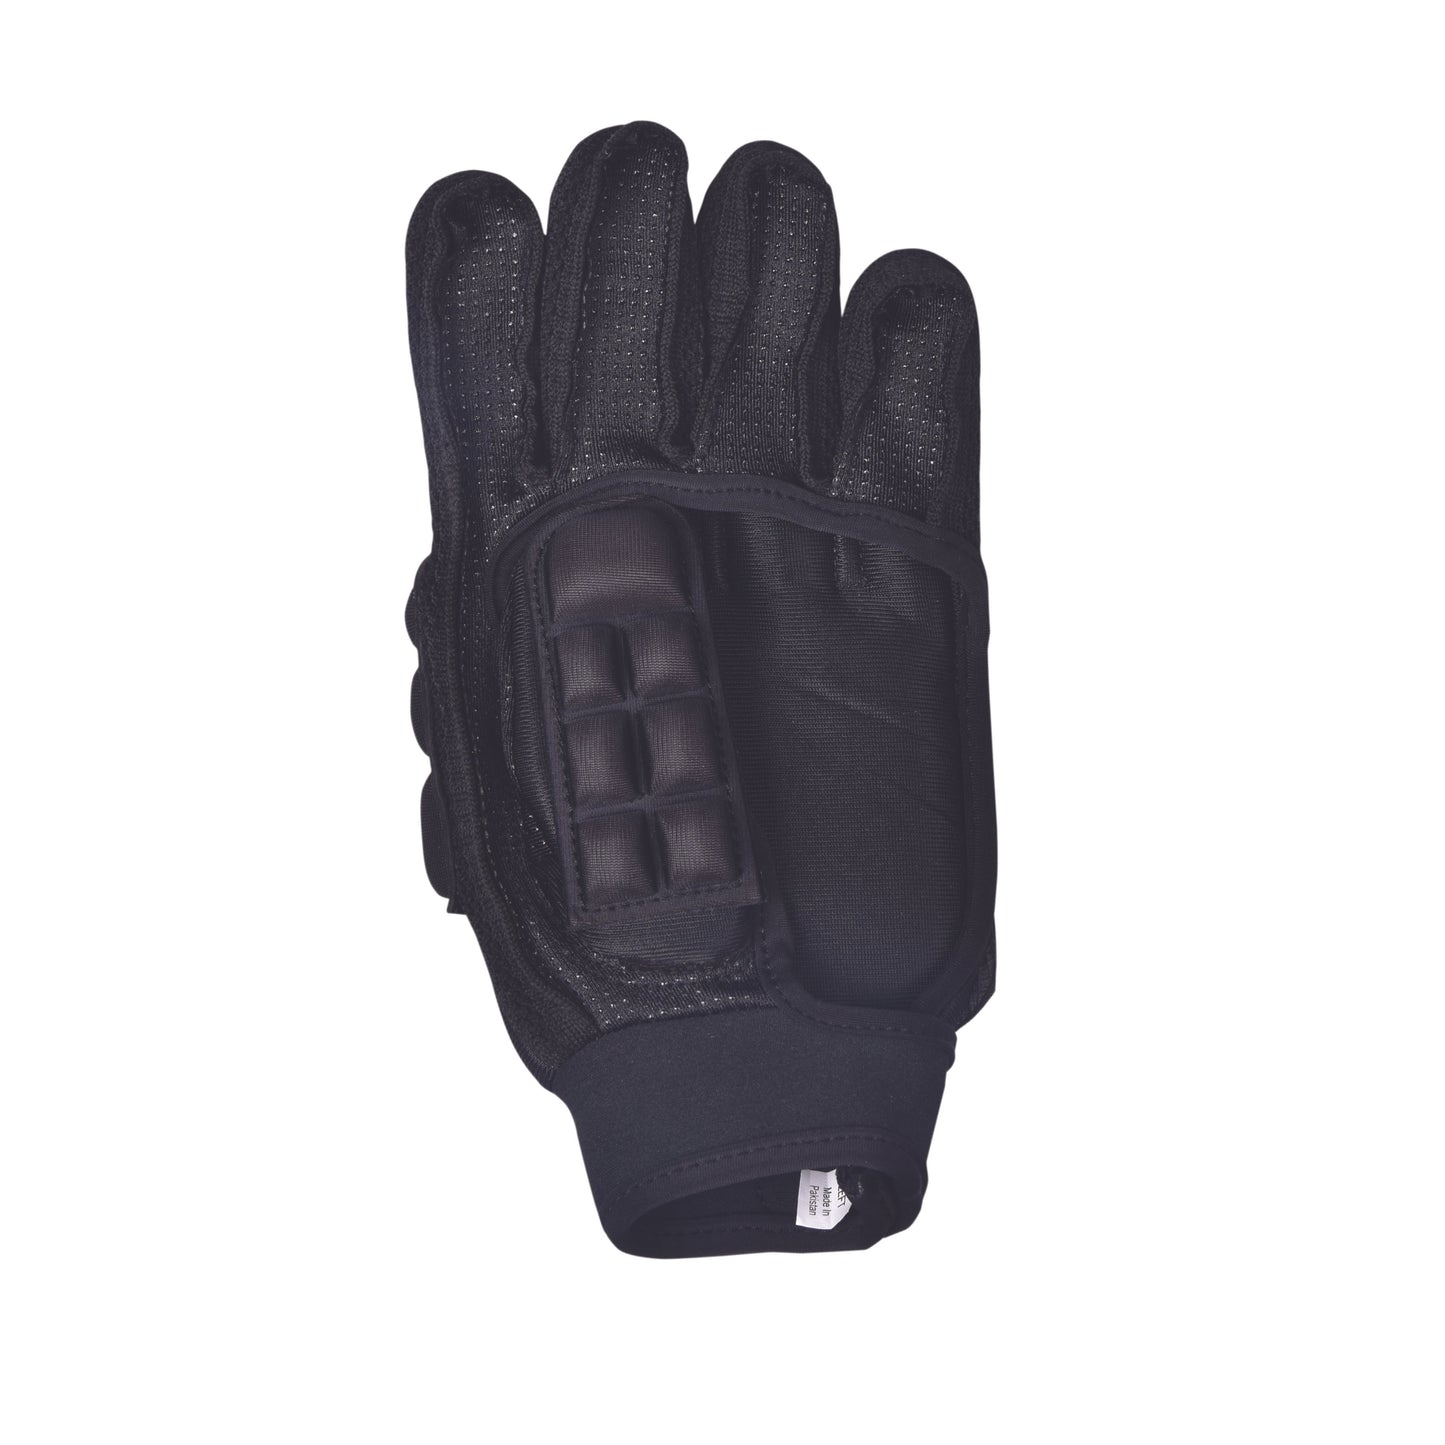 AT6 Foam Glove - XS & S